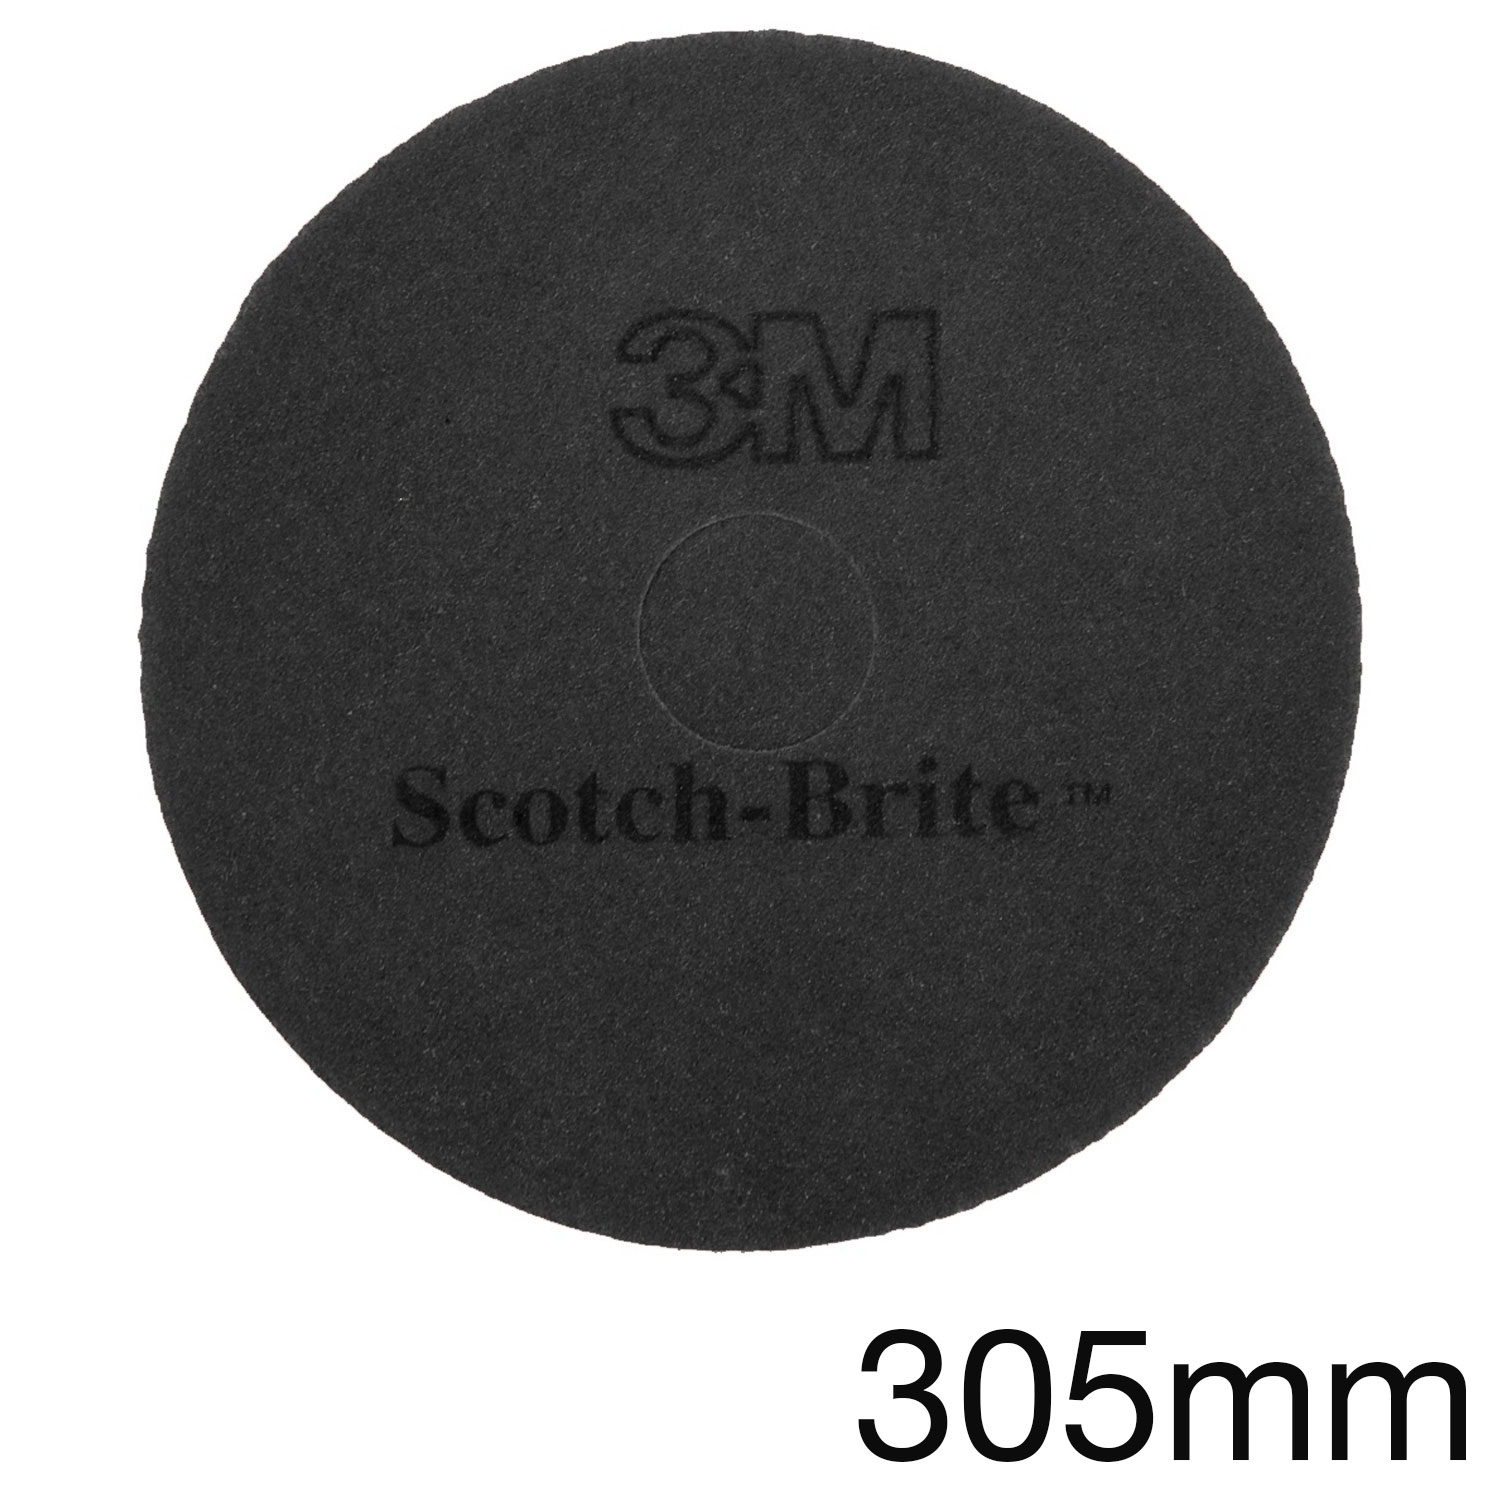 3M Scotch-Brite Superpad schwarz, 305mm, Pack mit 5 Stk